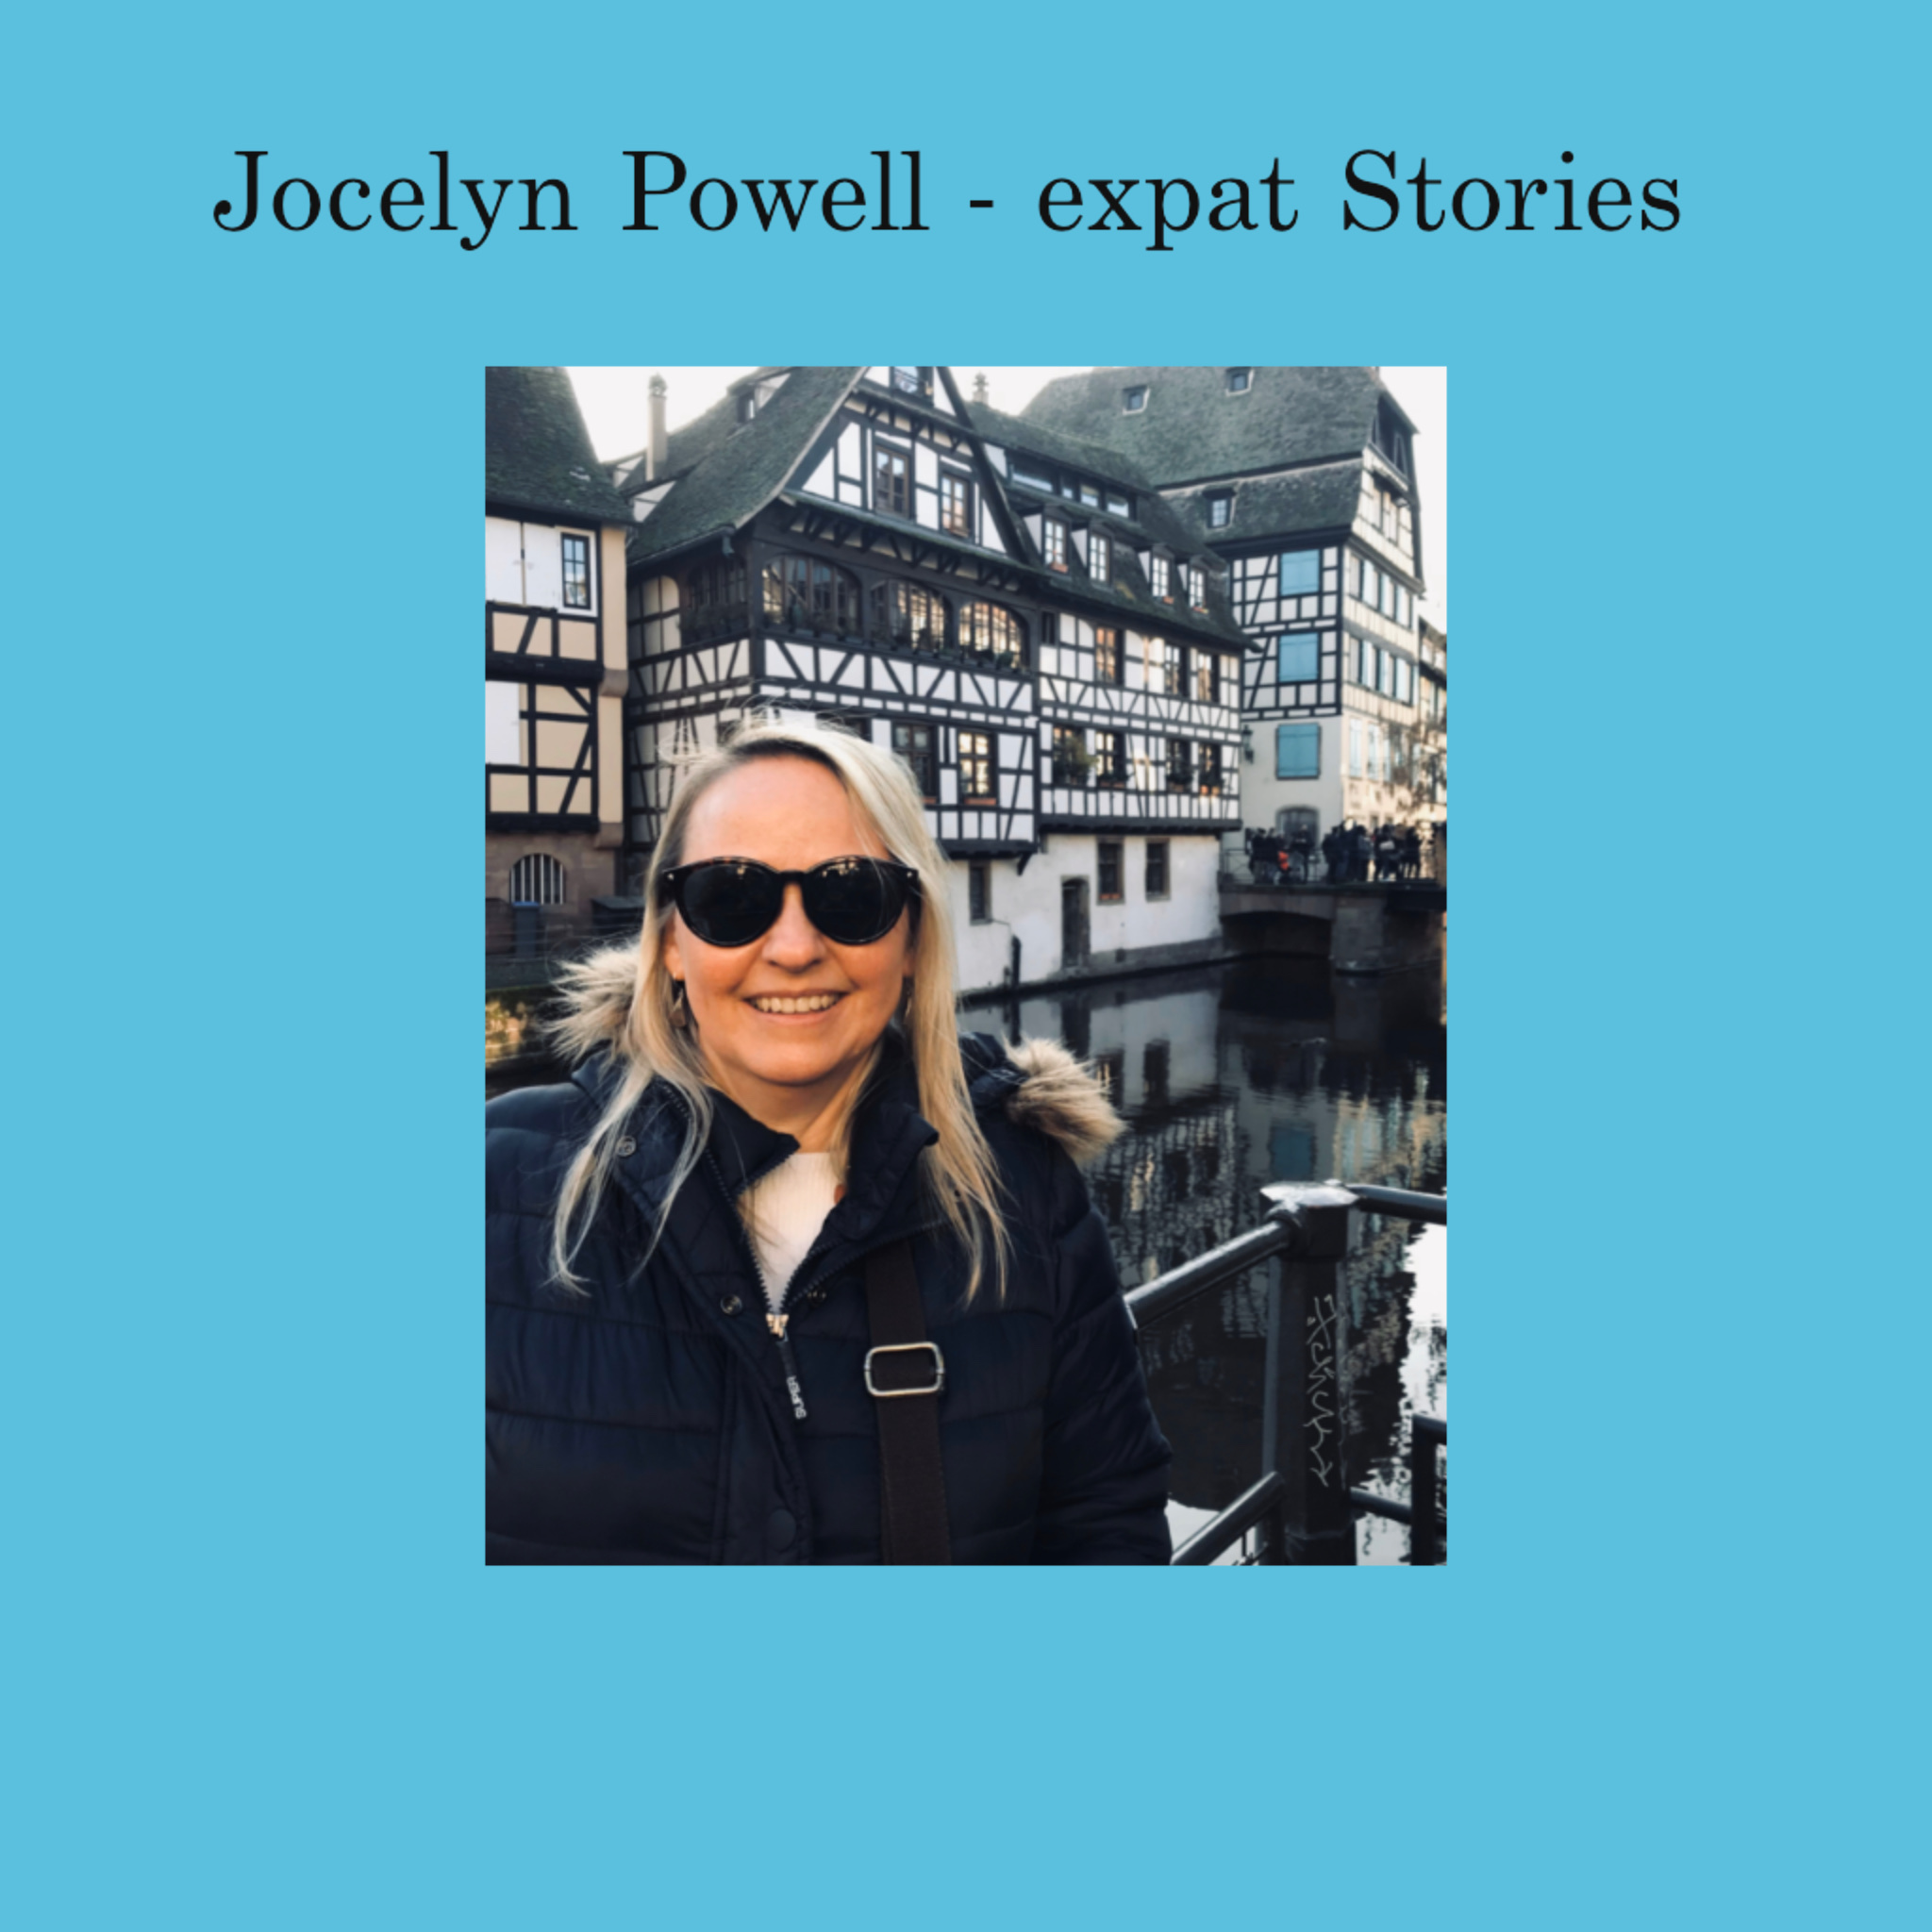 Jocelyn Powell expat stories